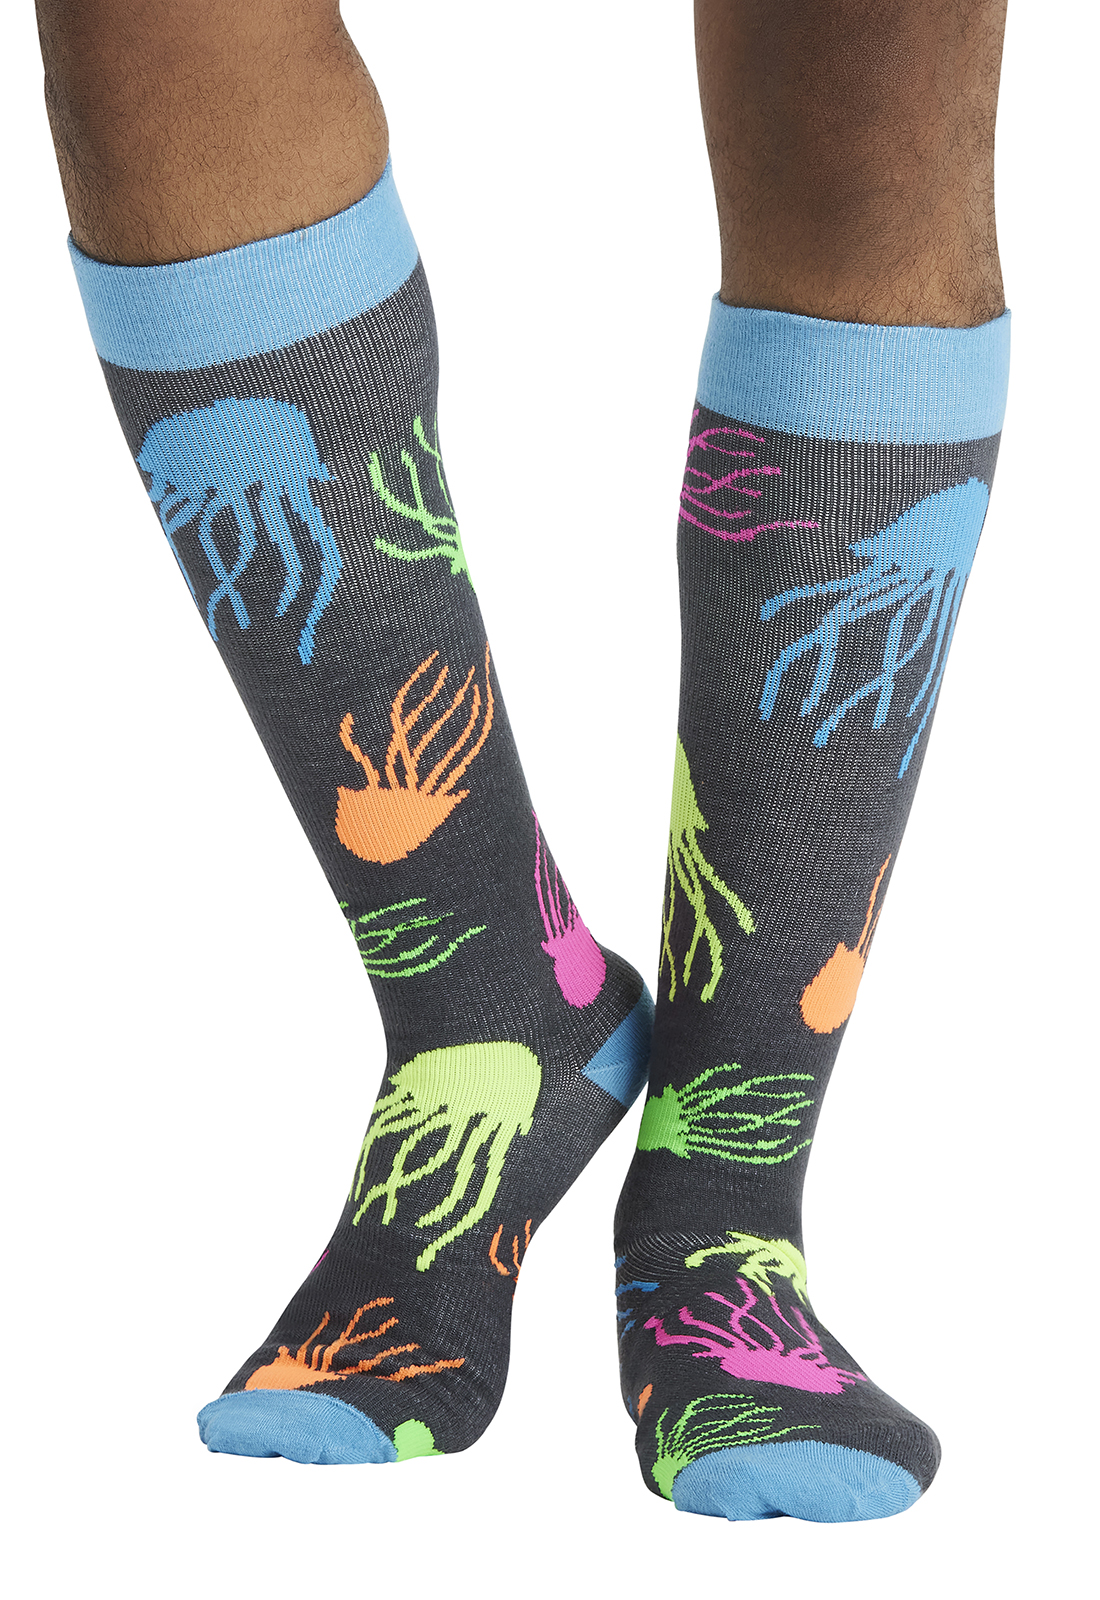 Tooniforms Men's 10-15mmHg Support Socks